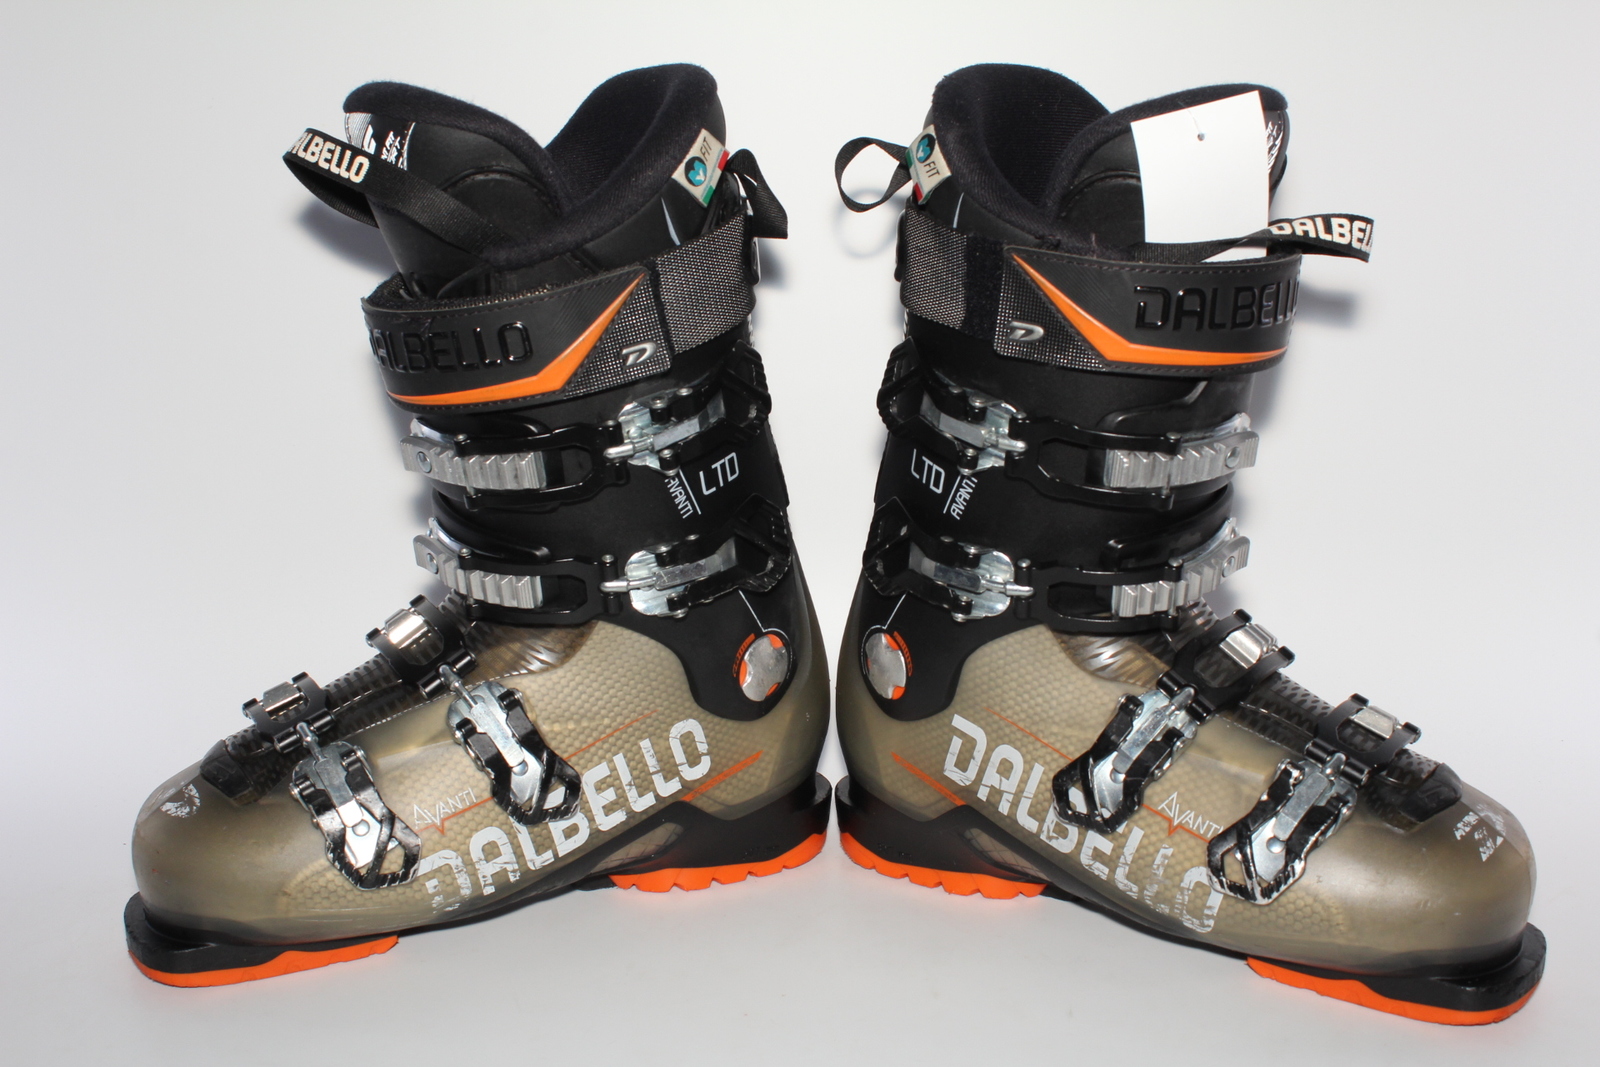 Lyžařské boty Dalbello Avanti  LTD vel. EU40.5 flexe 80